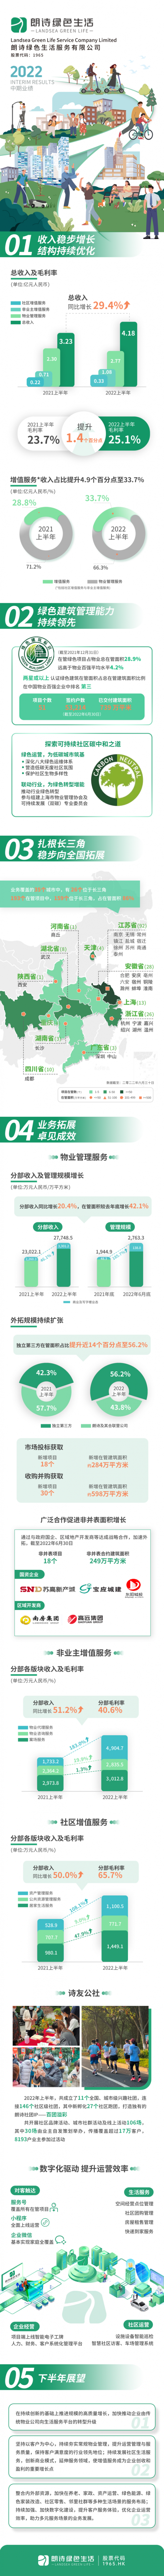 一图读懂朗诗绿色生活(01965)2022年度中期业绩：营收4.18亿元 同比增长29.4%